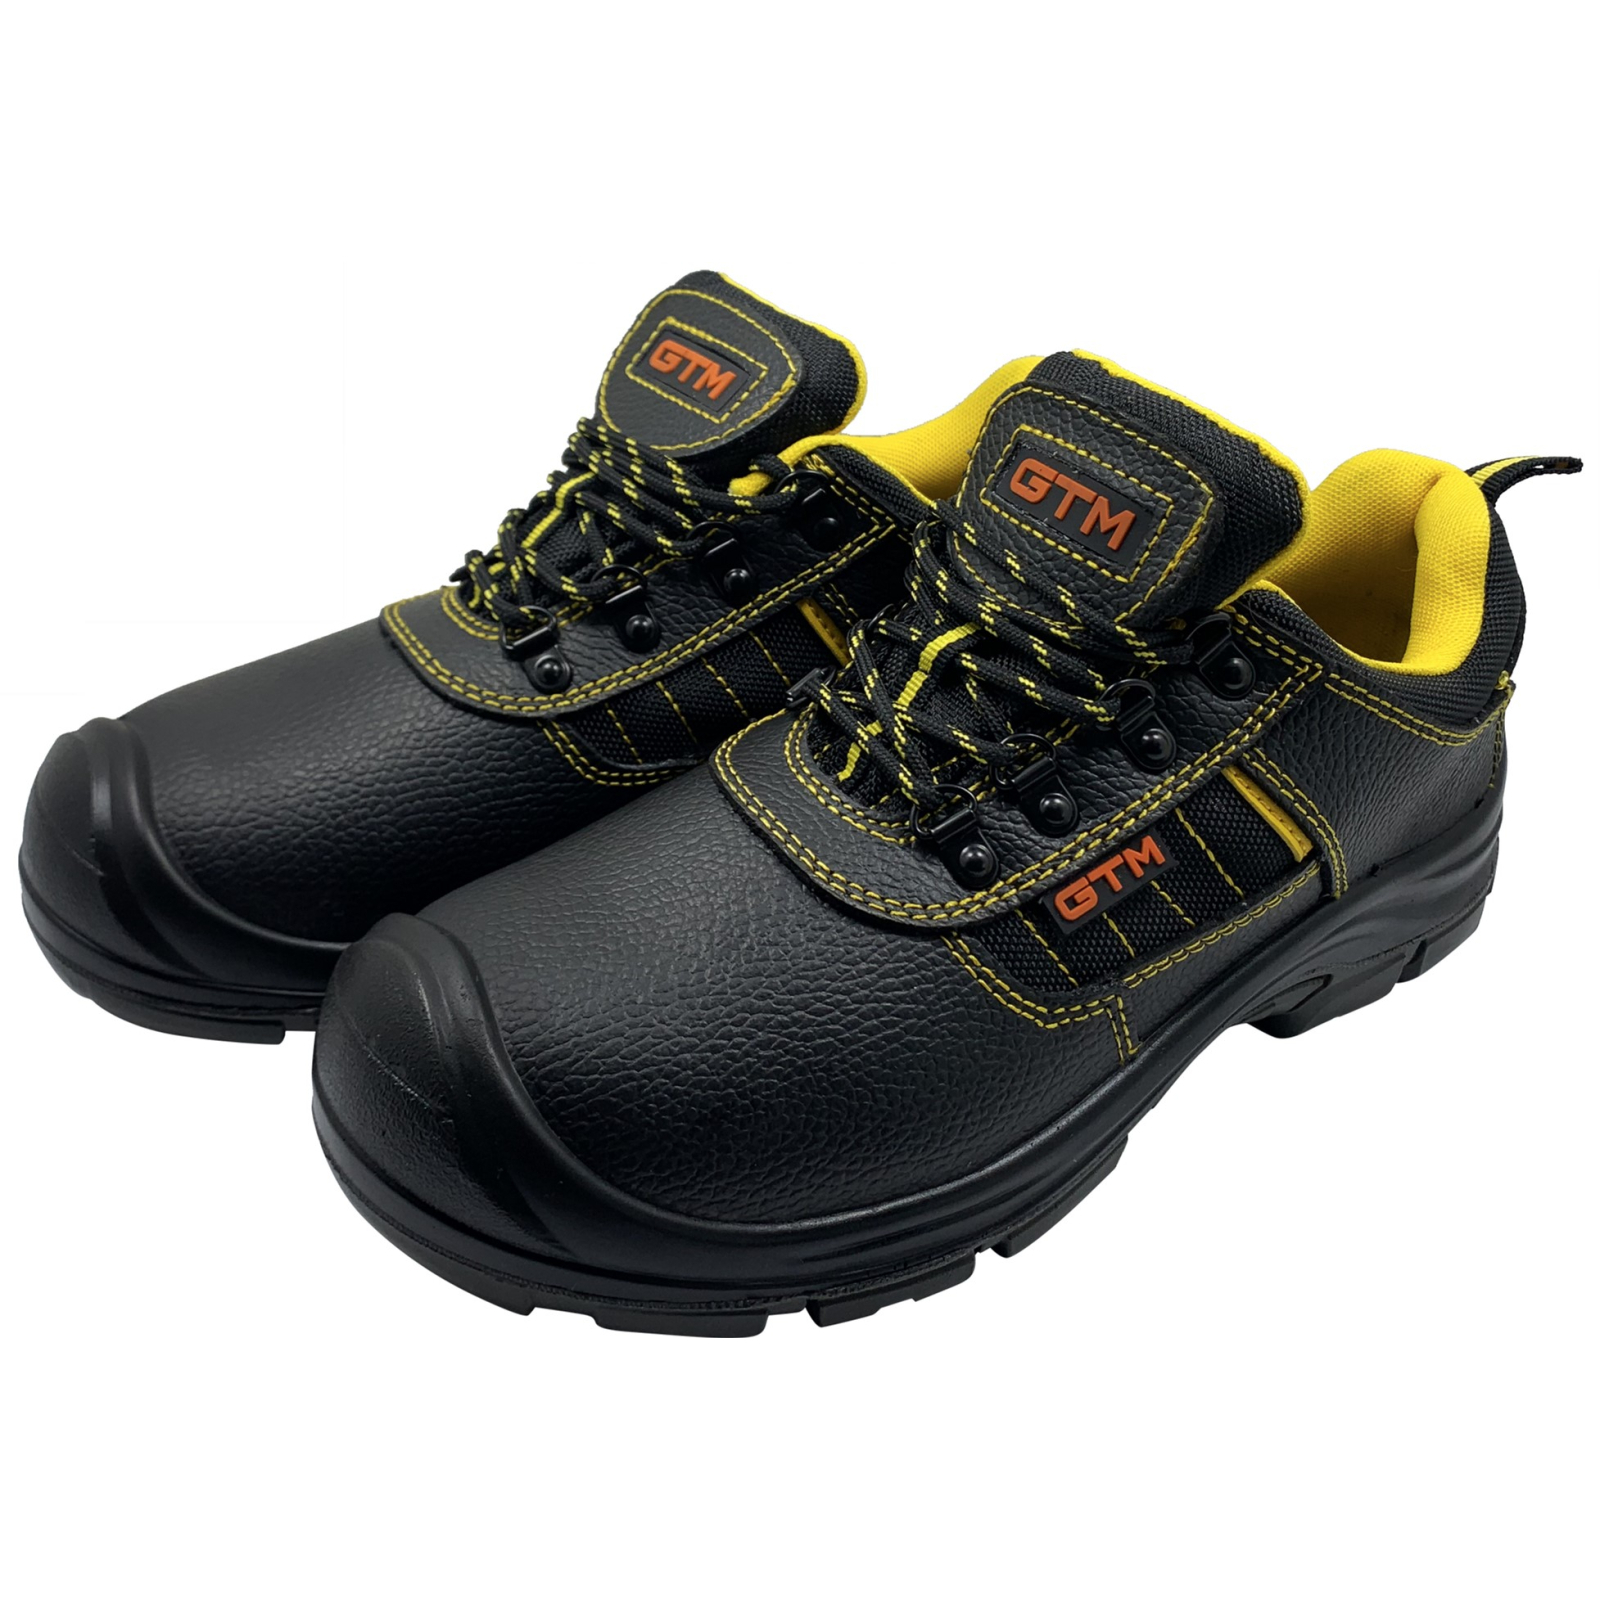 Ботинки рабочие GTM SM-078 мет. носок, р.44 с желтыми вставками (SM-078-44) изображение 3